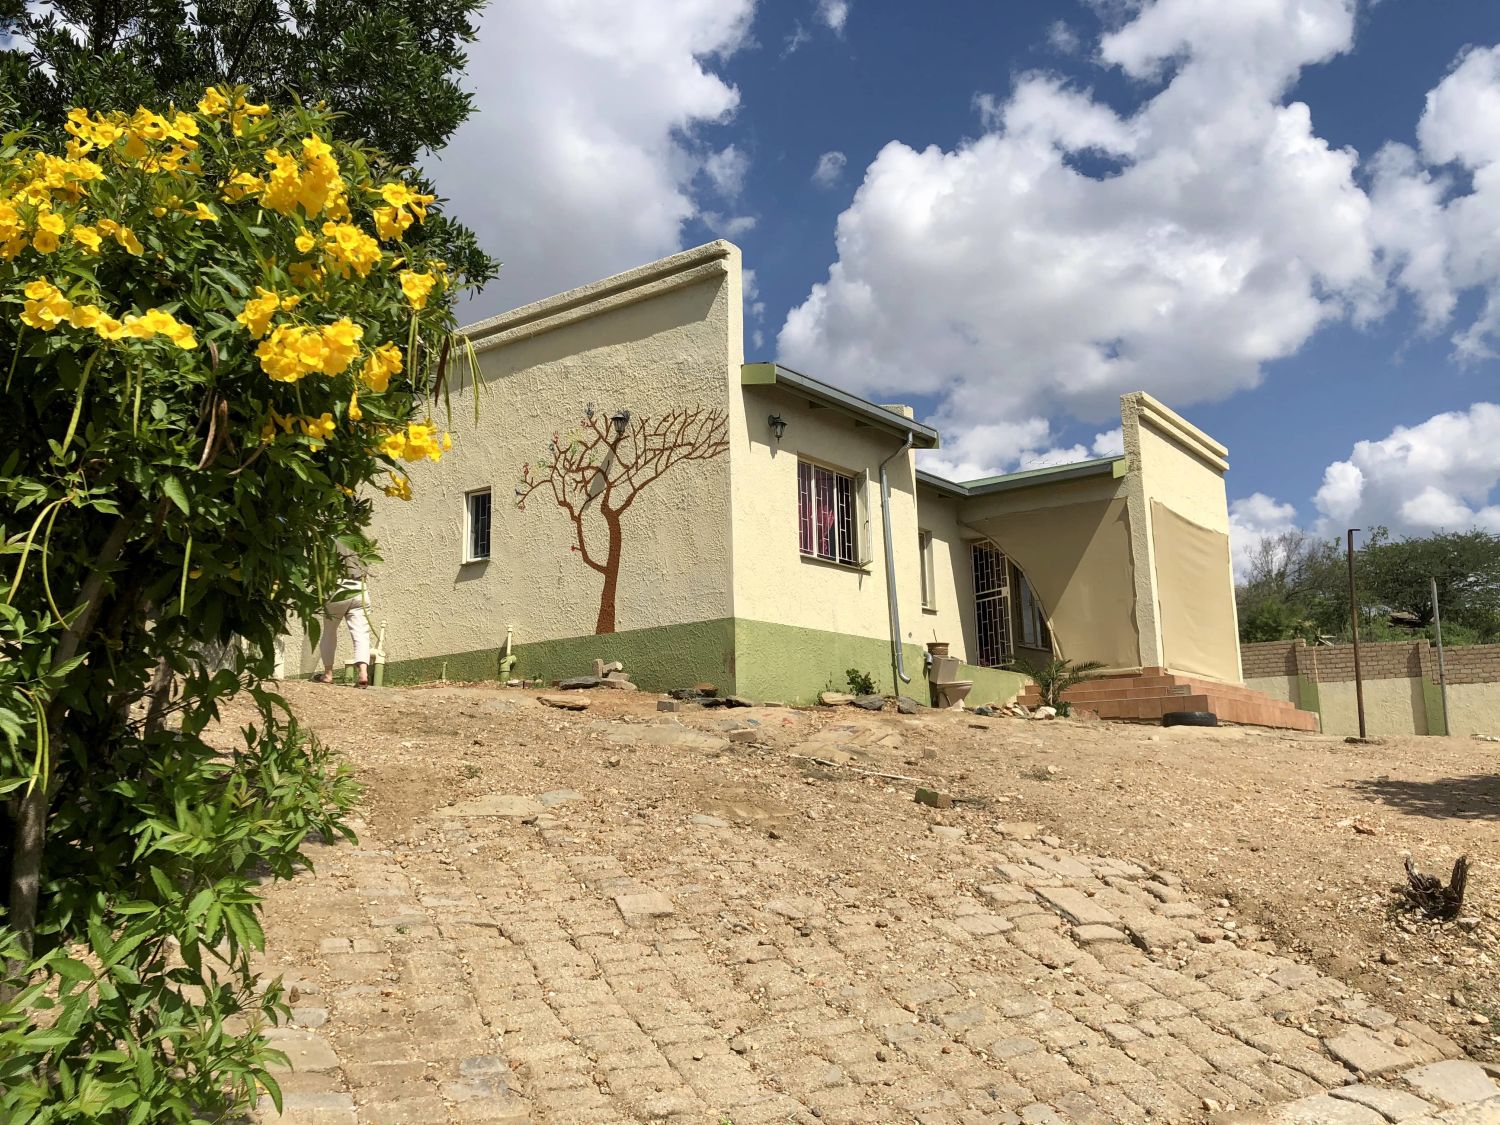 Das frisch gestrichene grün-gelbe Haus ist umgeben von eine schützenden Mauer. An der Seite des Hauses ist ein Baum gemalt worden und die großen Büsche im Garten tragen große gelbe Blumen.